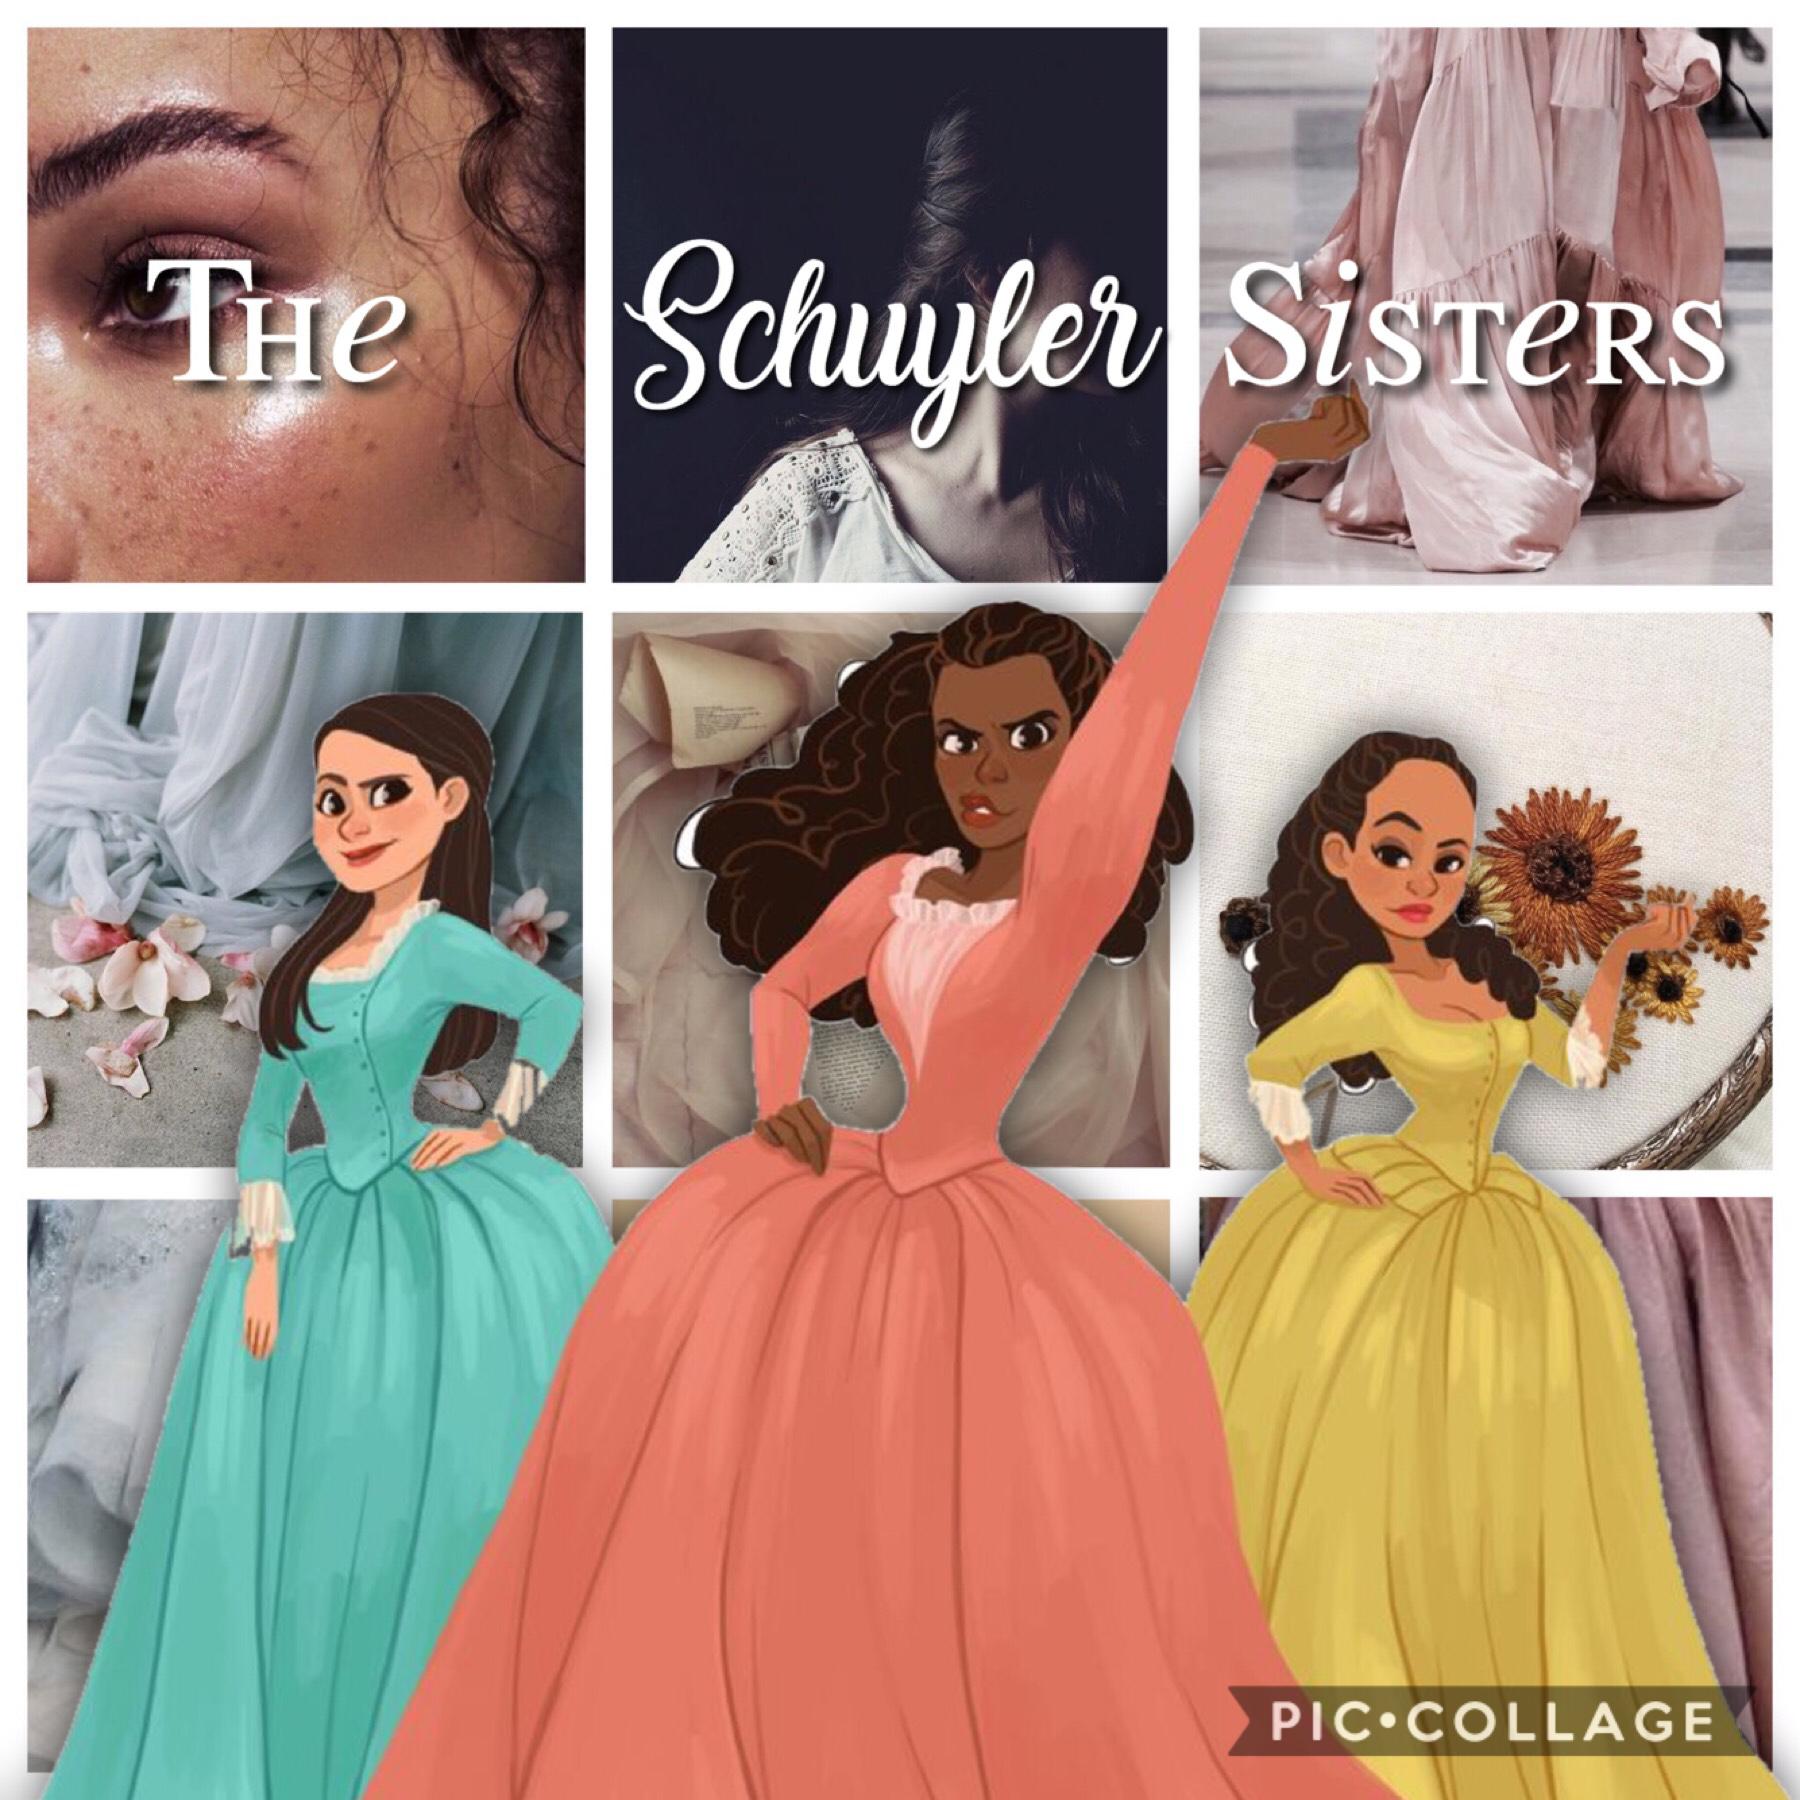 The Schuyler Sisters
QOTD: Zodiac Sign?
AOTD: Cancer ♋️